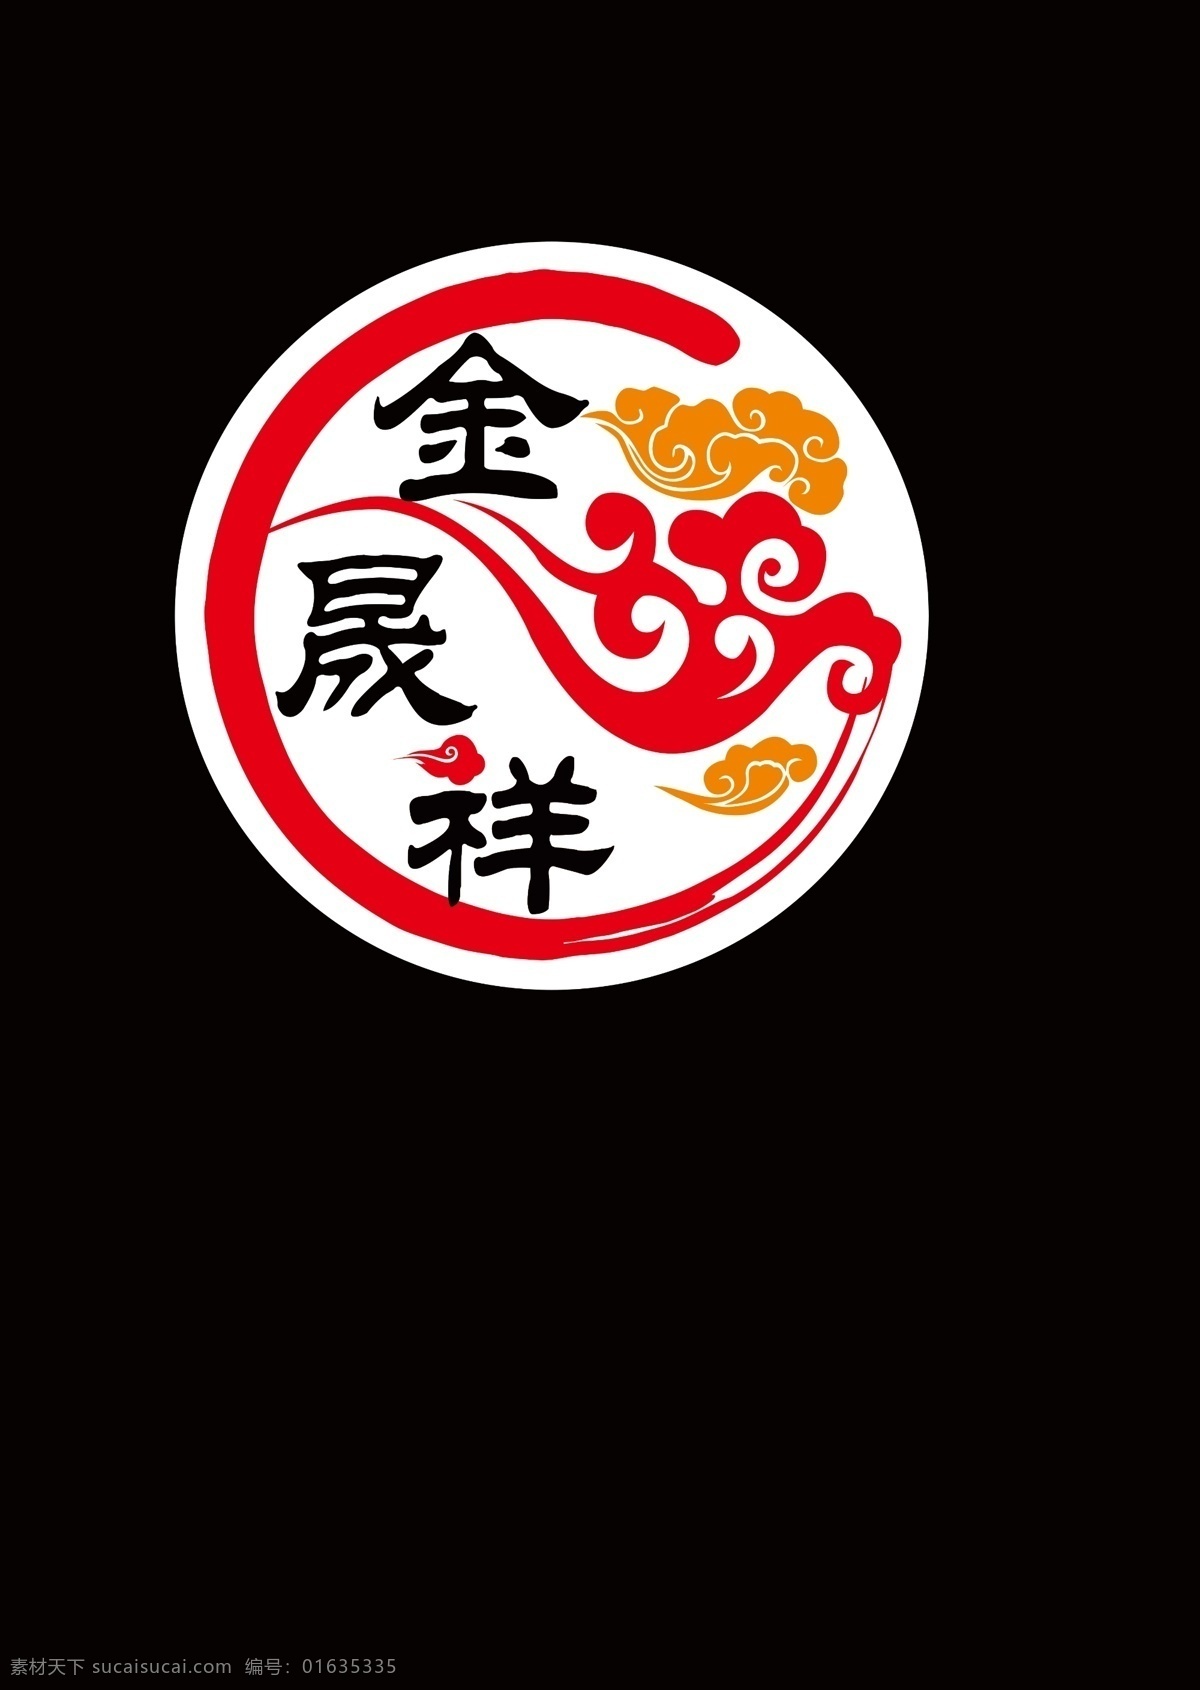 金 晟 祥 logo 金logo 标志 金字标志 餐饮logo 祥云 墨迹 红色 圆形标志 标志logo logo设计